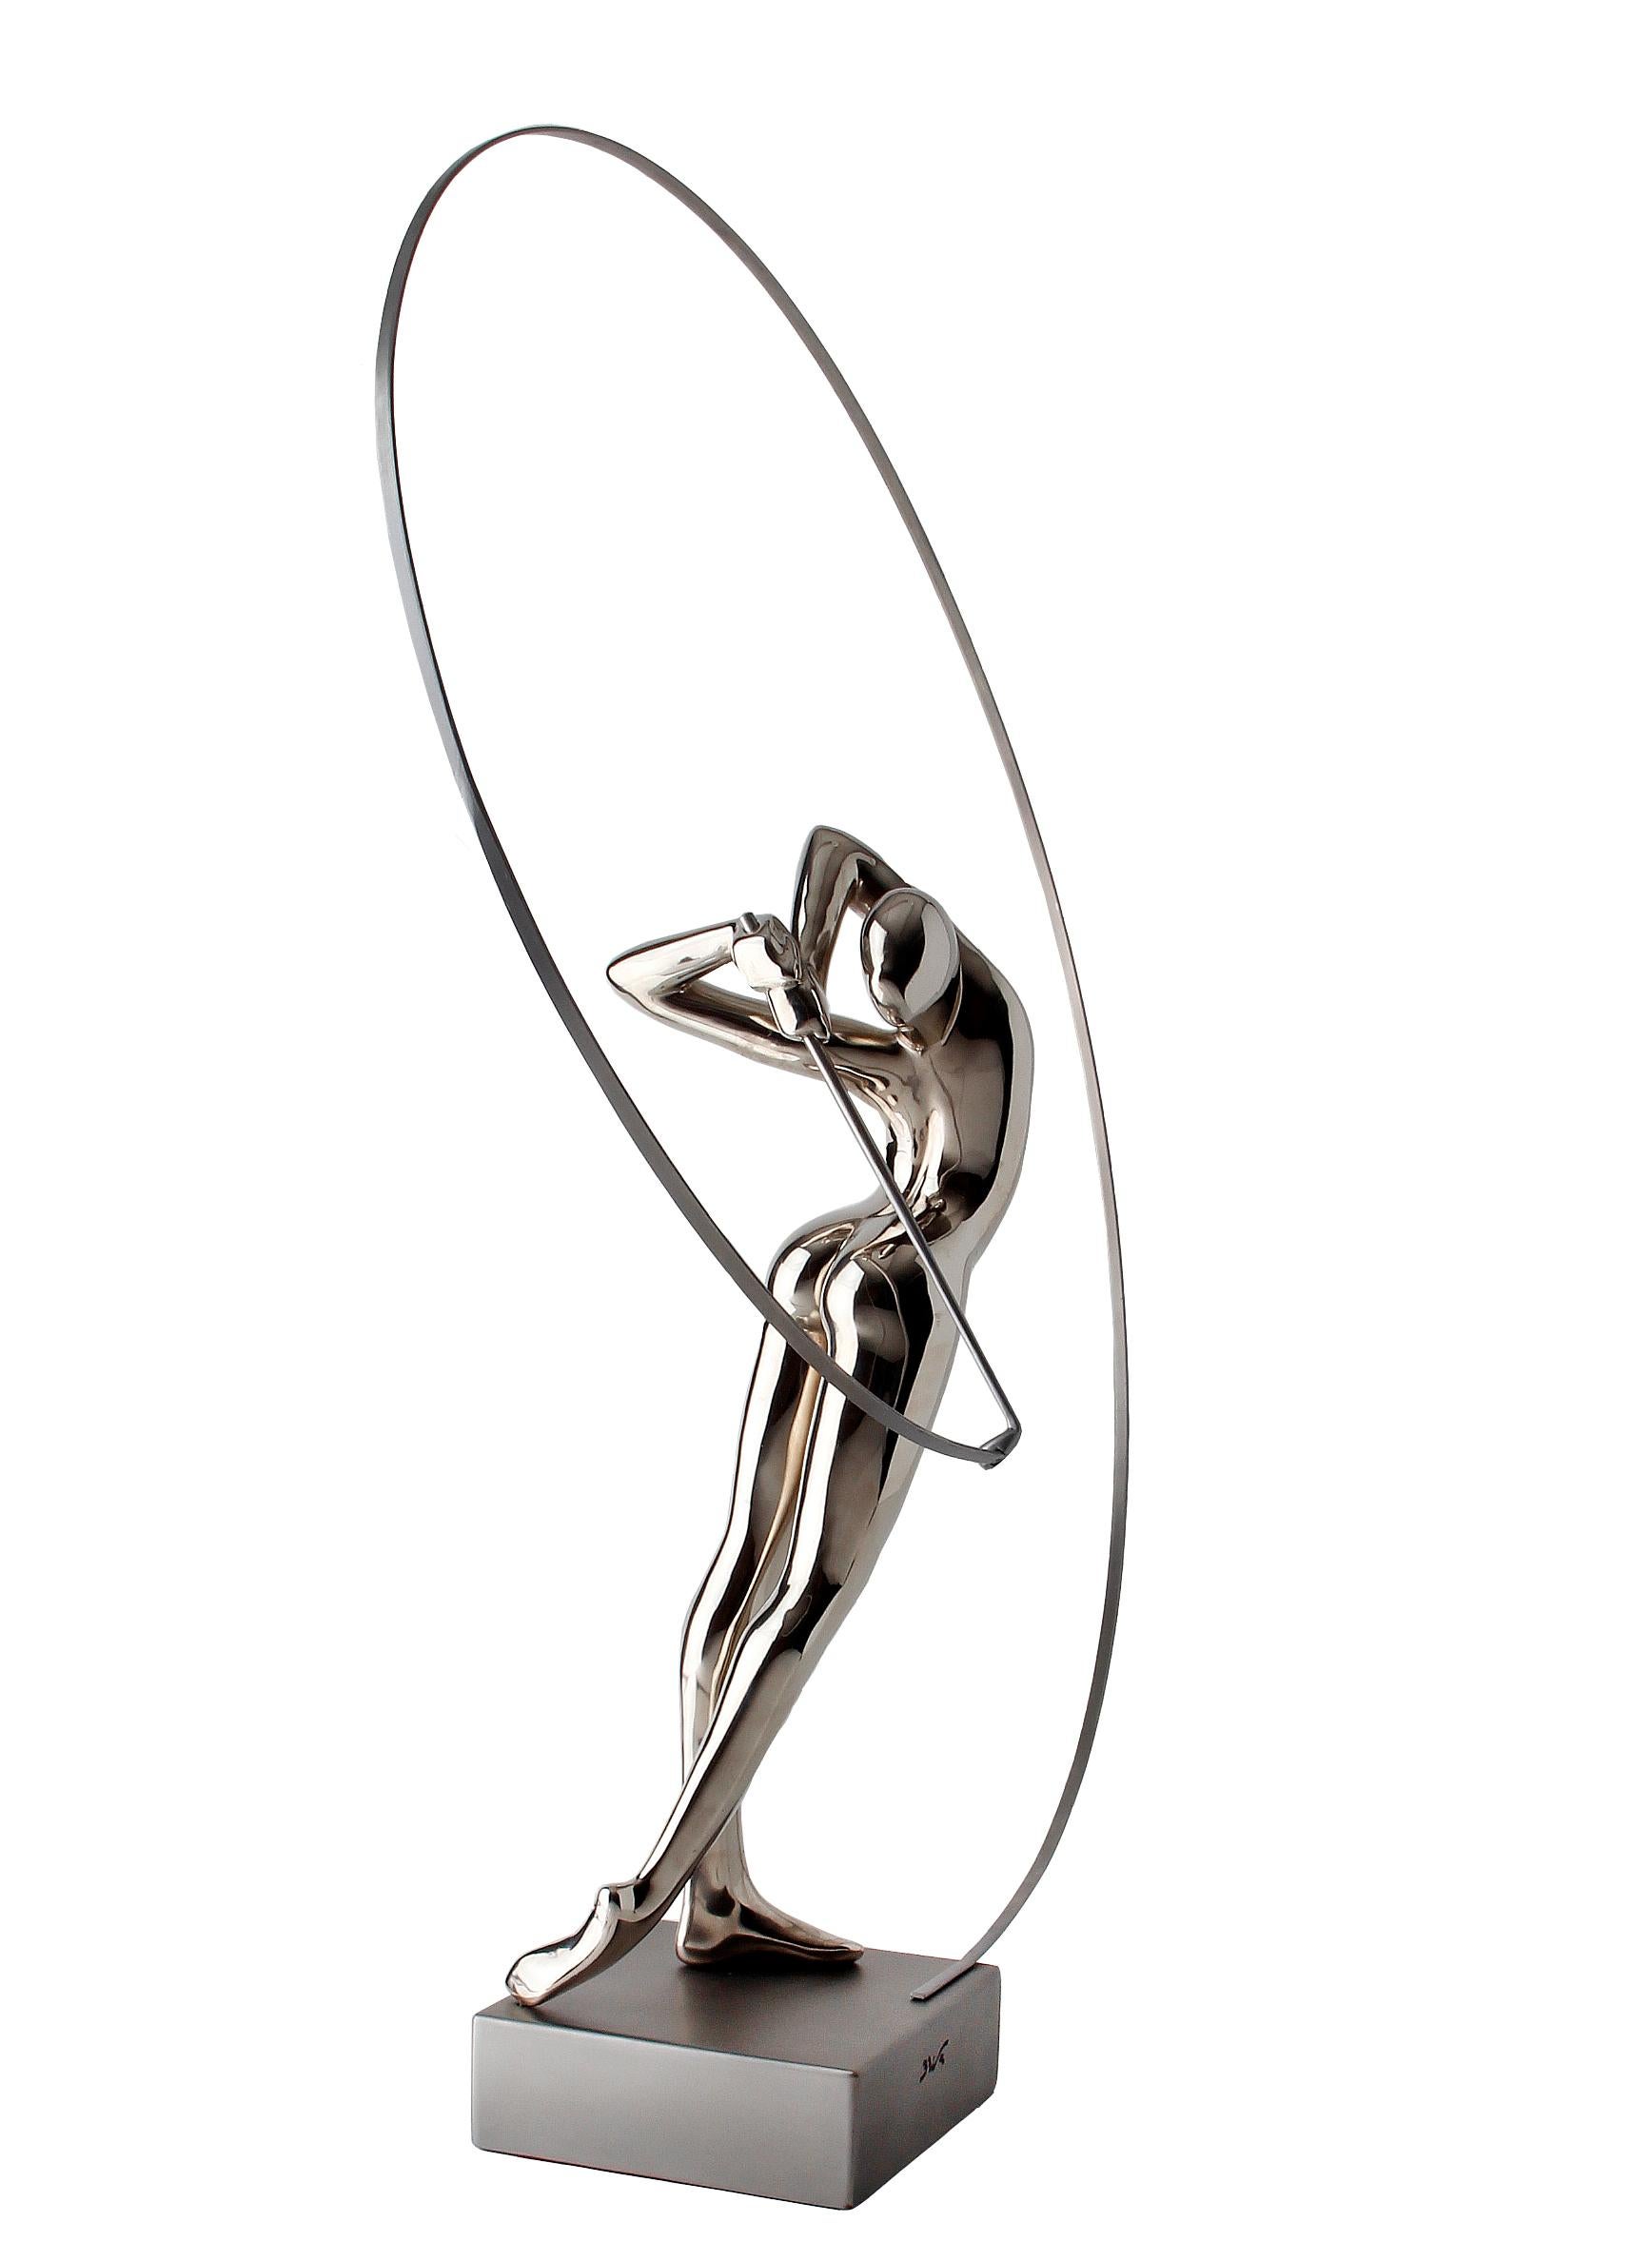  Bernard Rives  Golf  Silver  Swing original resin sculpture For Sale 3